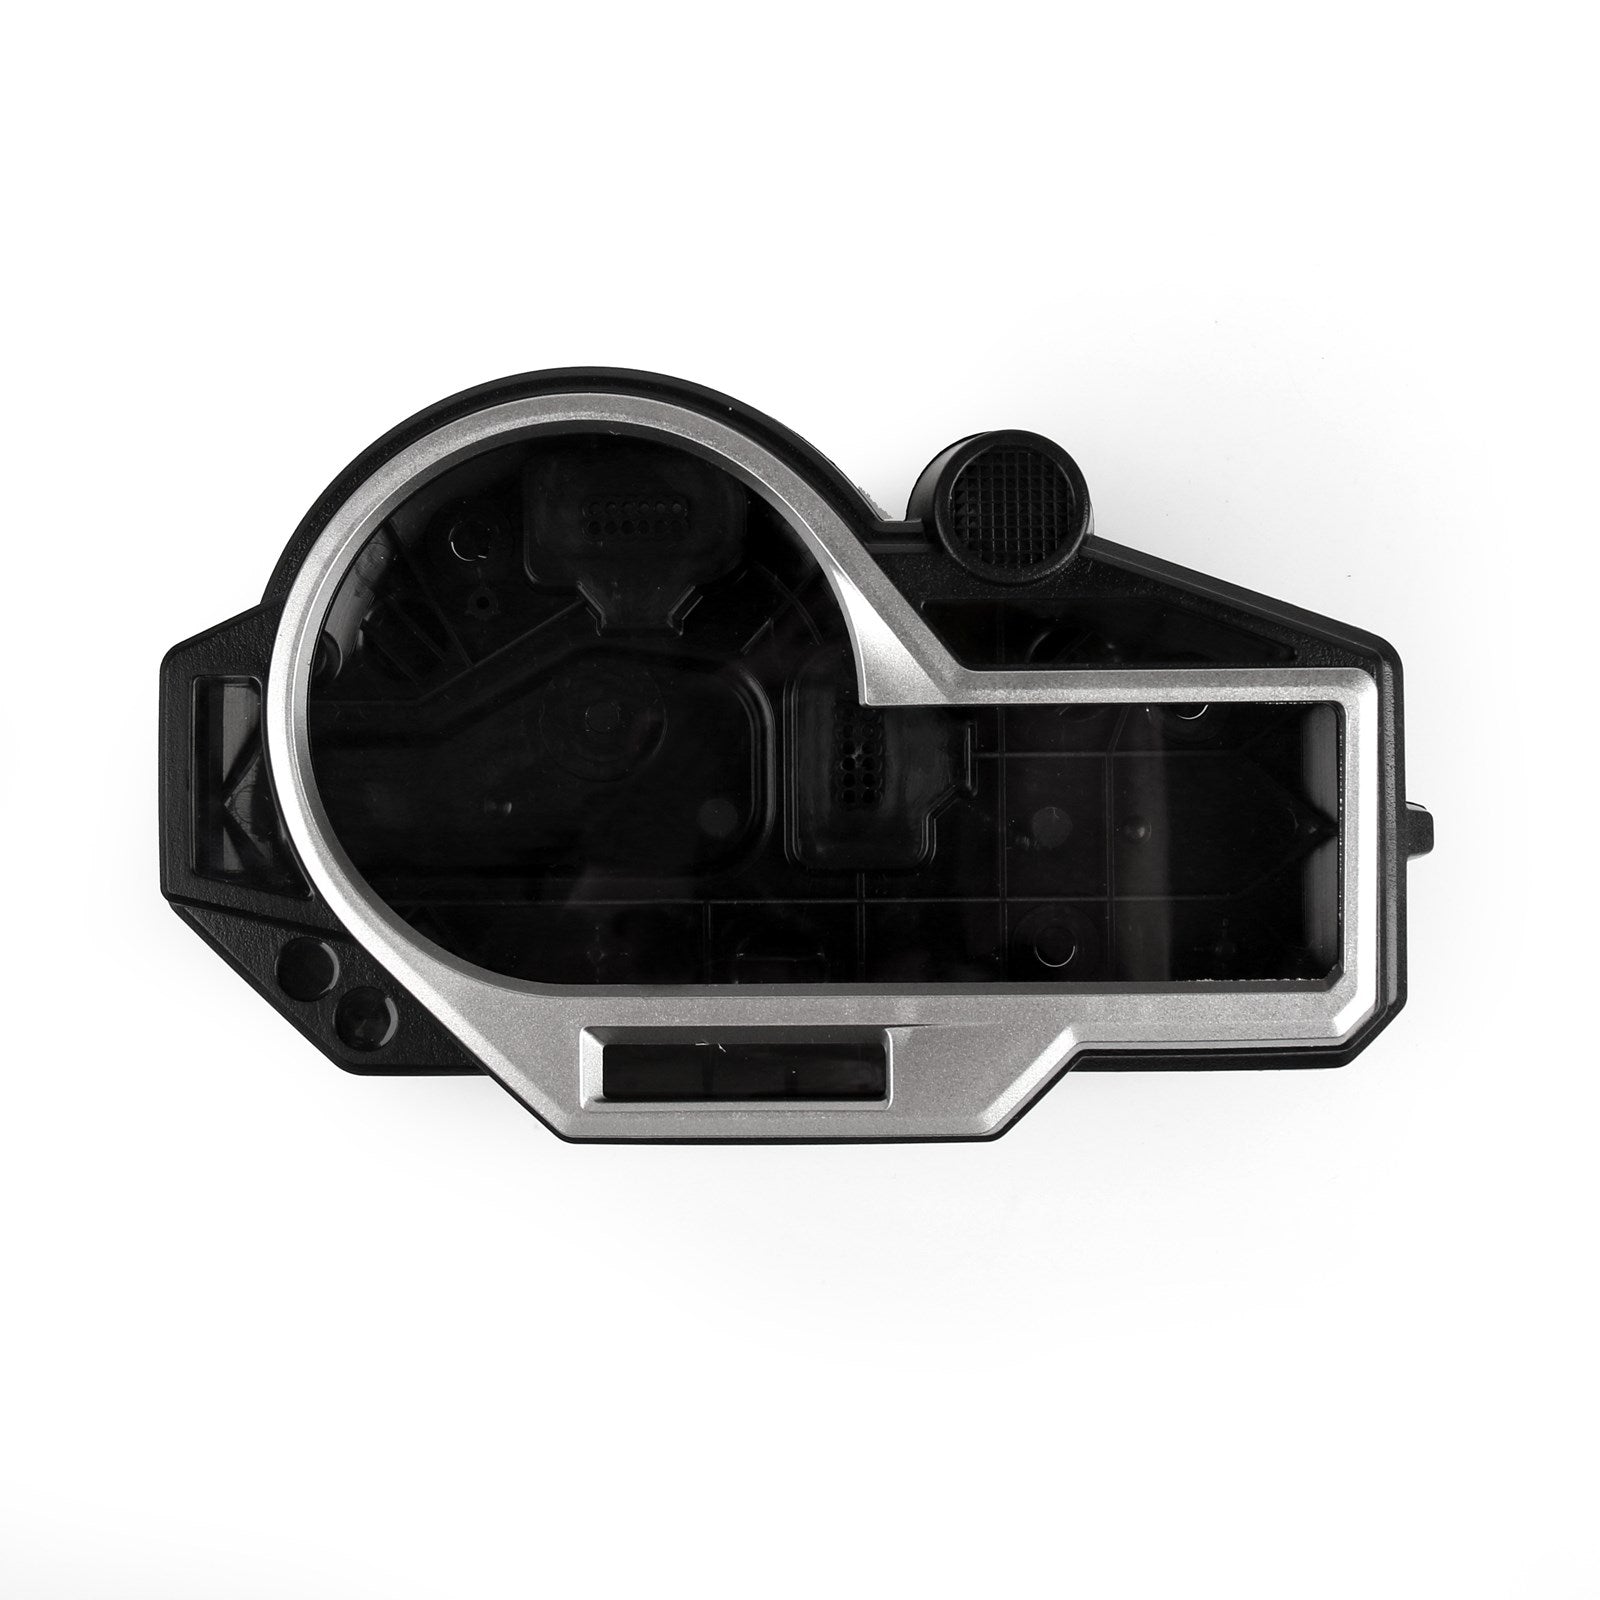 Plasti Tacho Gauge Instrument Hull Gehäuse Abdeckung Fit für BMW S1000RR 2015